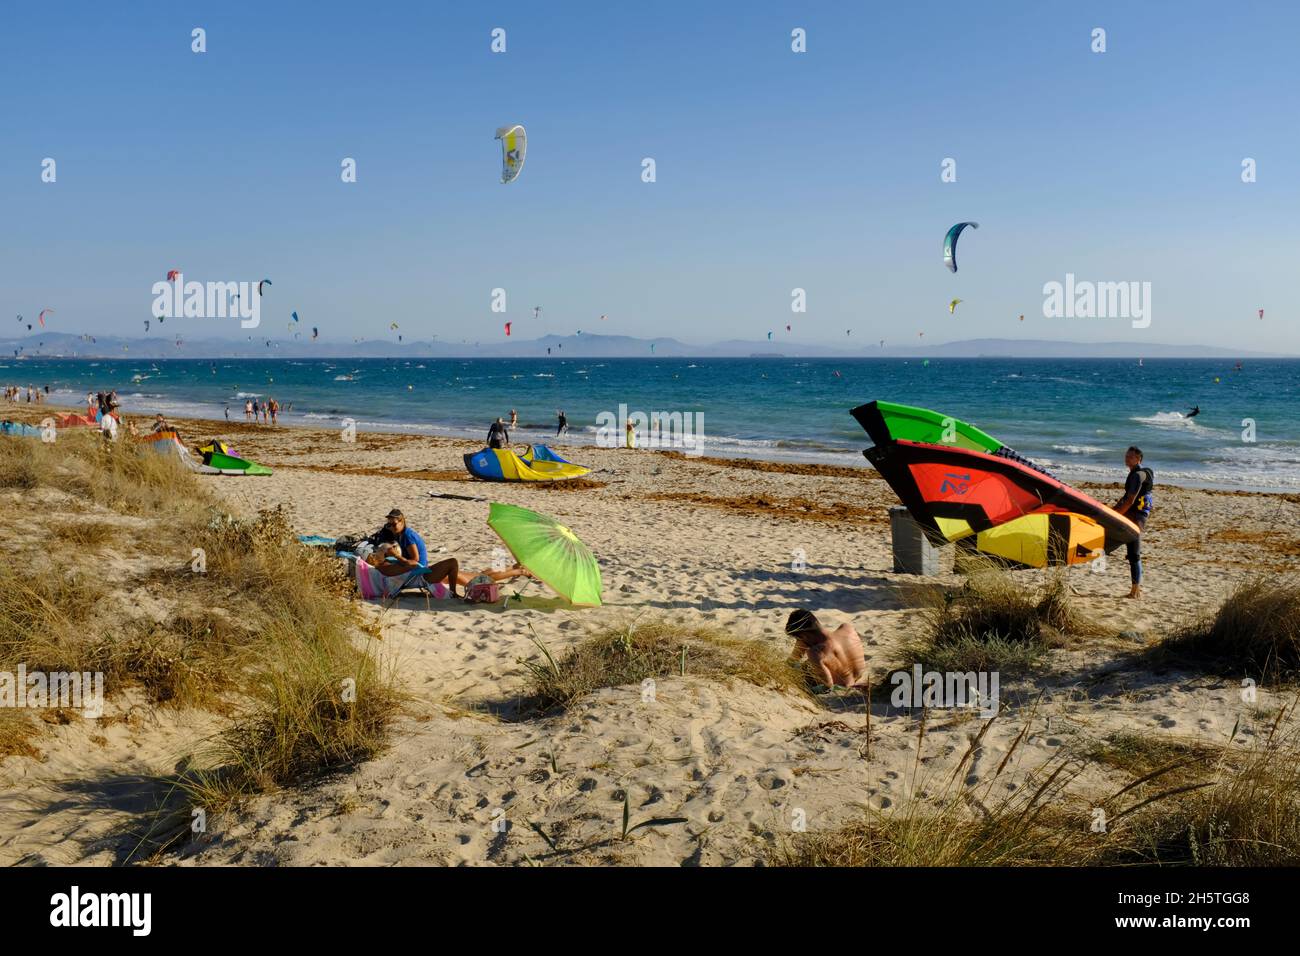 Kitesurfers preparando sus cometas y bañistas en la playa de Los Lances.Tarifa, Costa de la Luz, Provincia de Cádiz, Andalucía, España Foto de stock